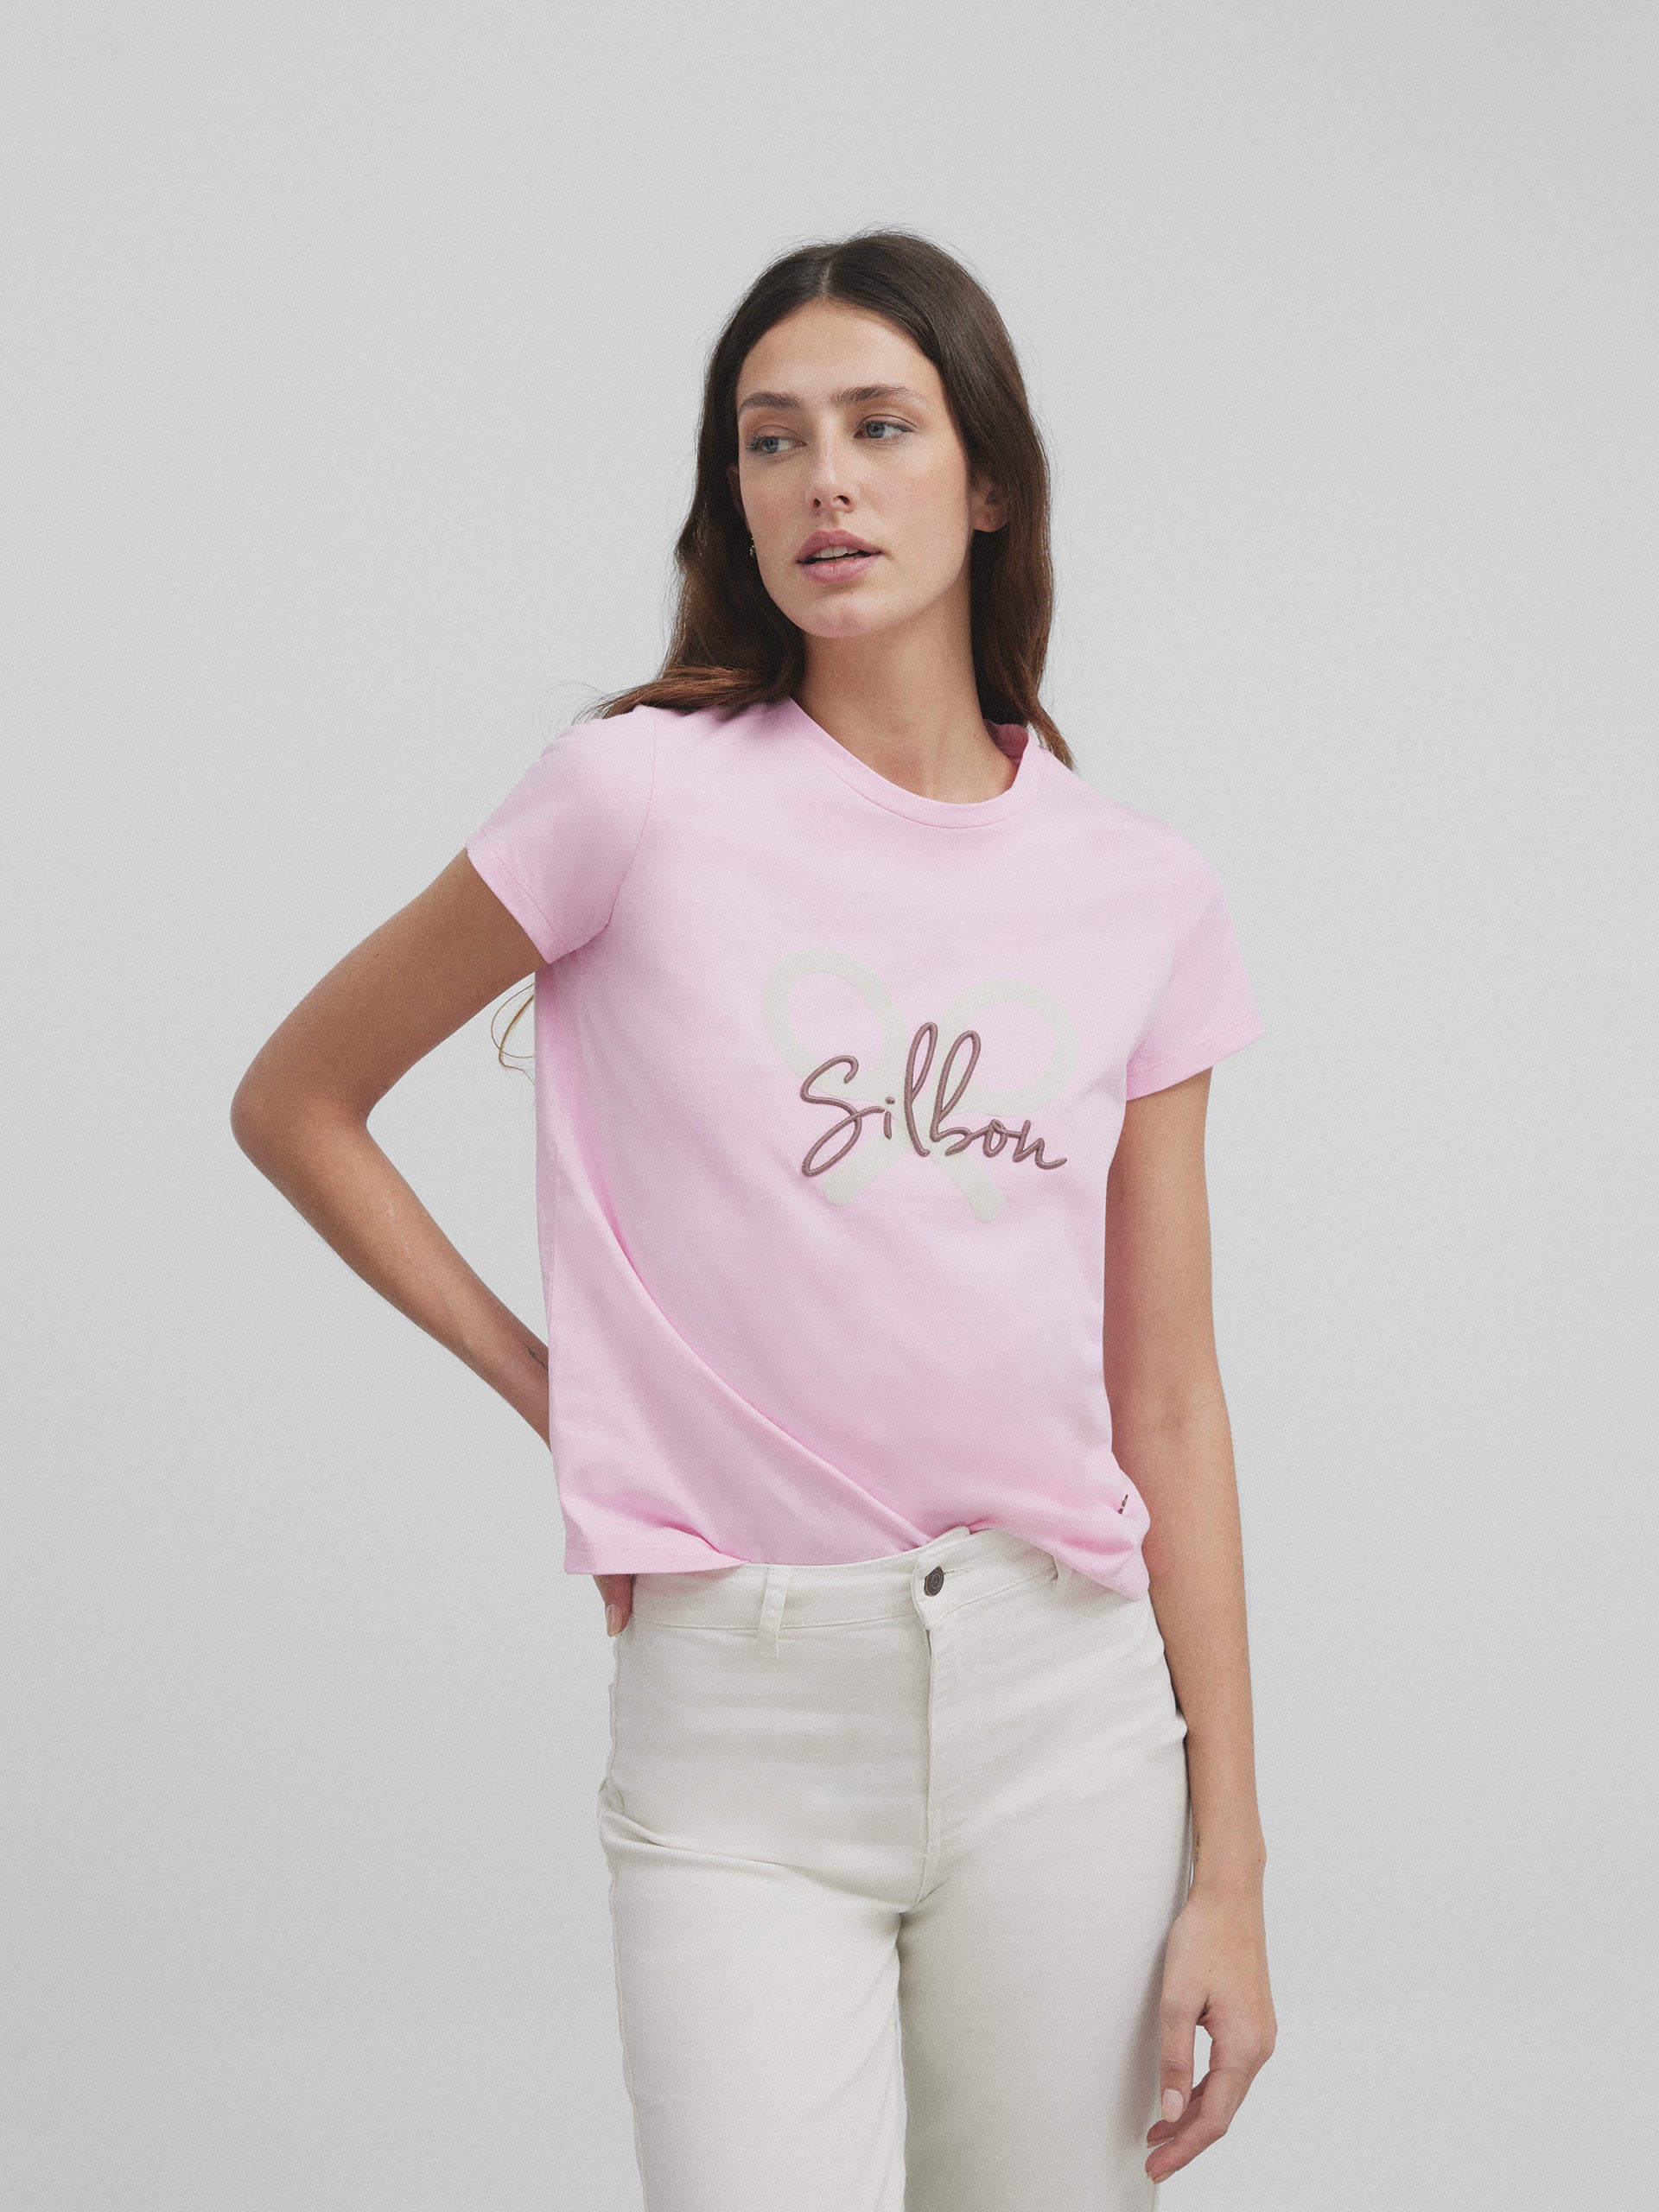 Classic pink women's t-shirt